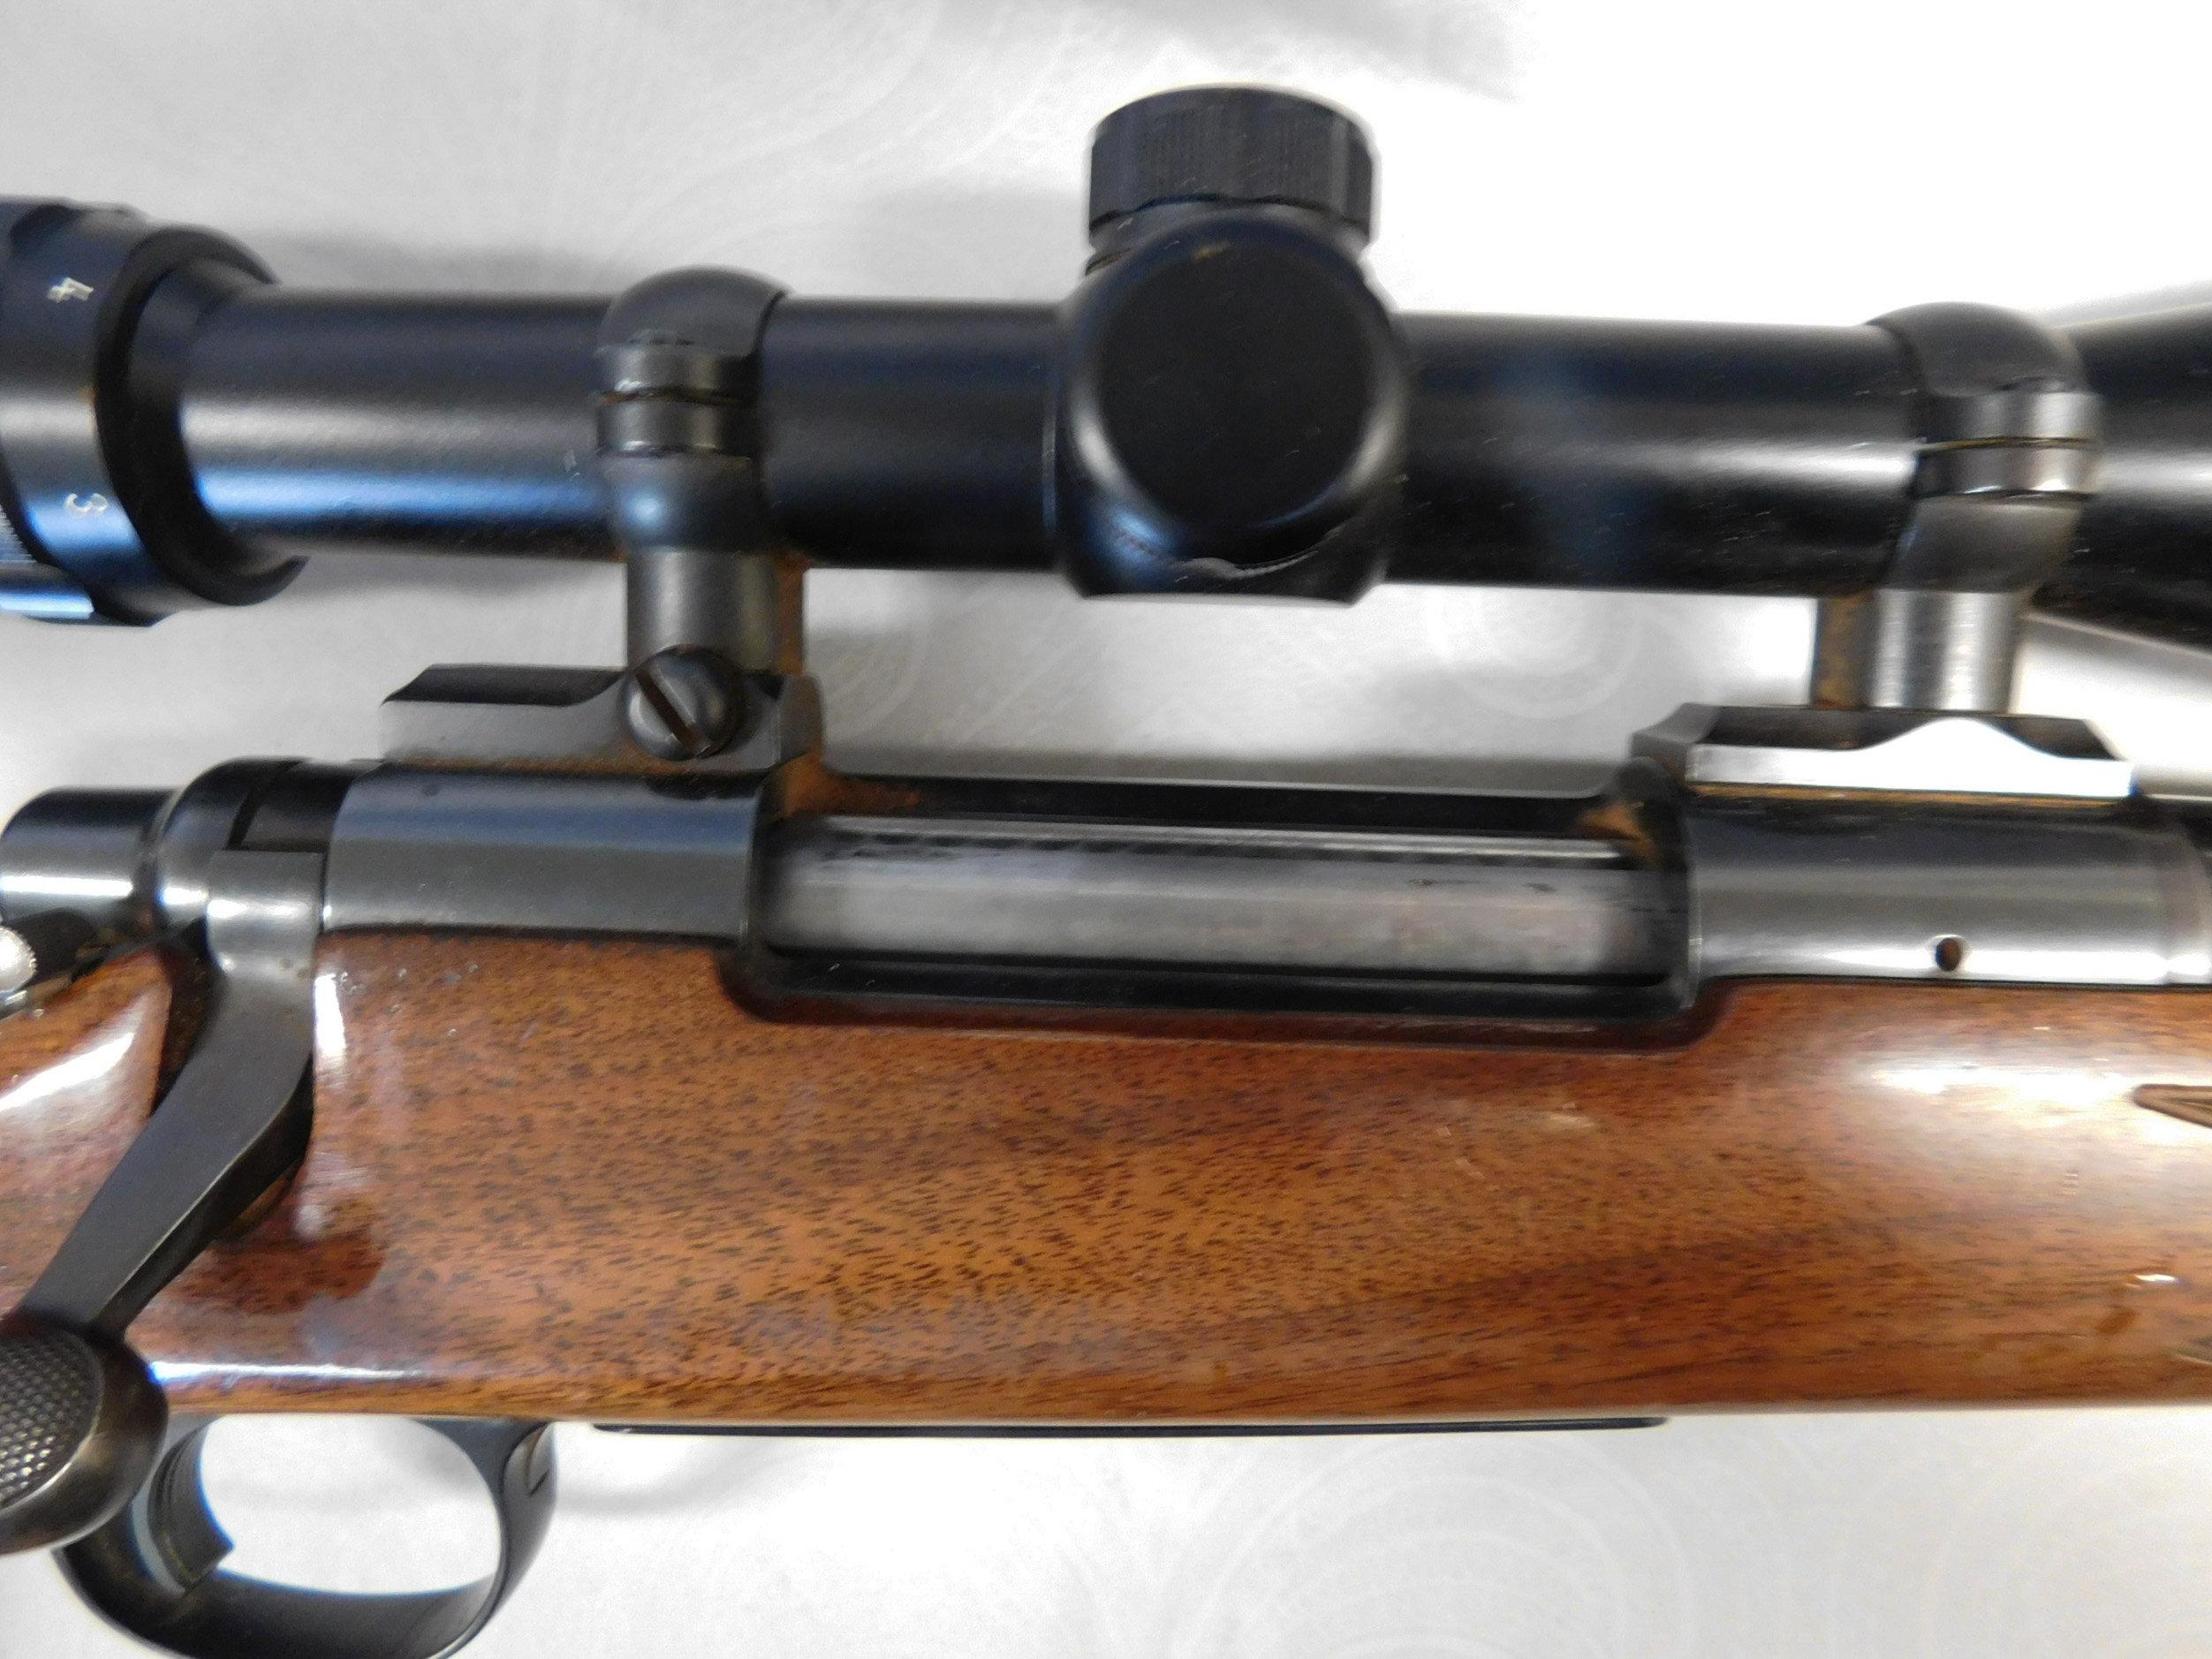 Remington 25-06 Bolt Action Rifle